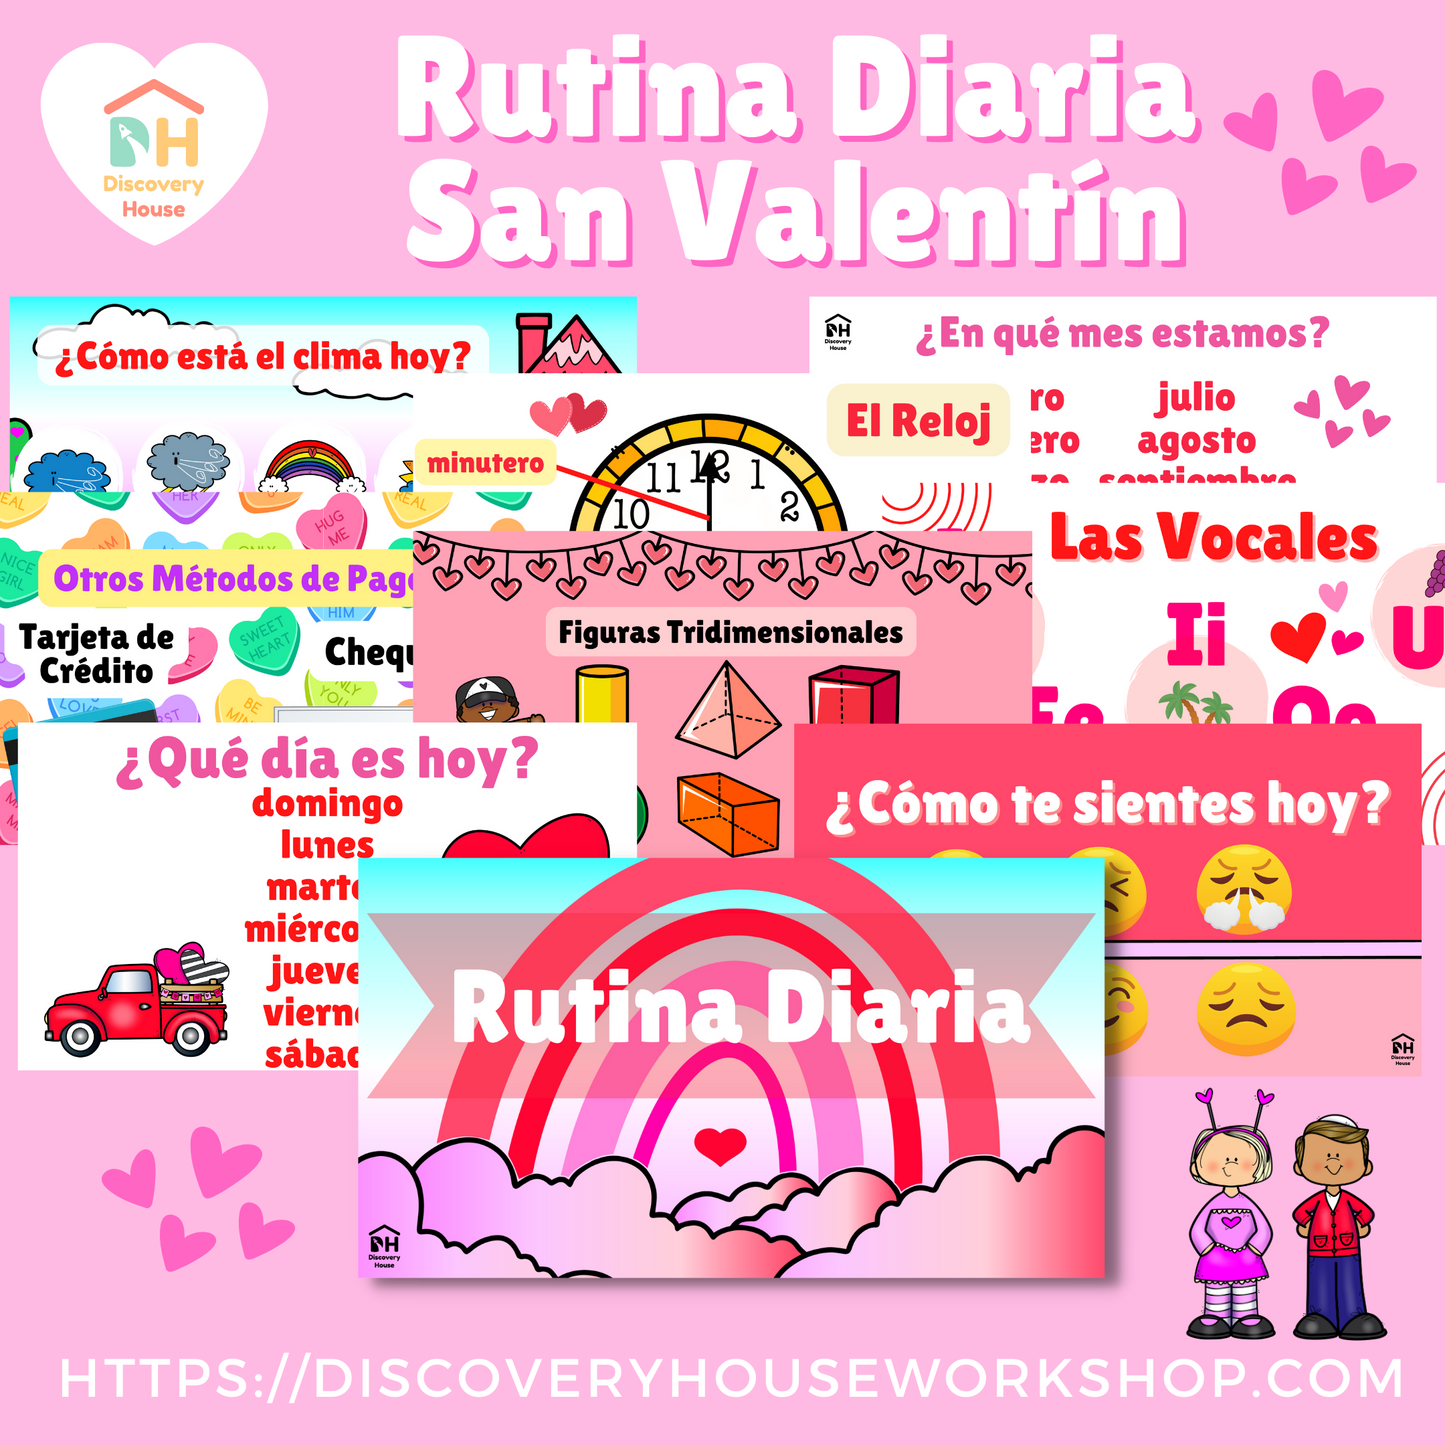 Rutina Diaria - San Valentín